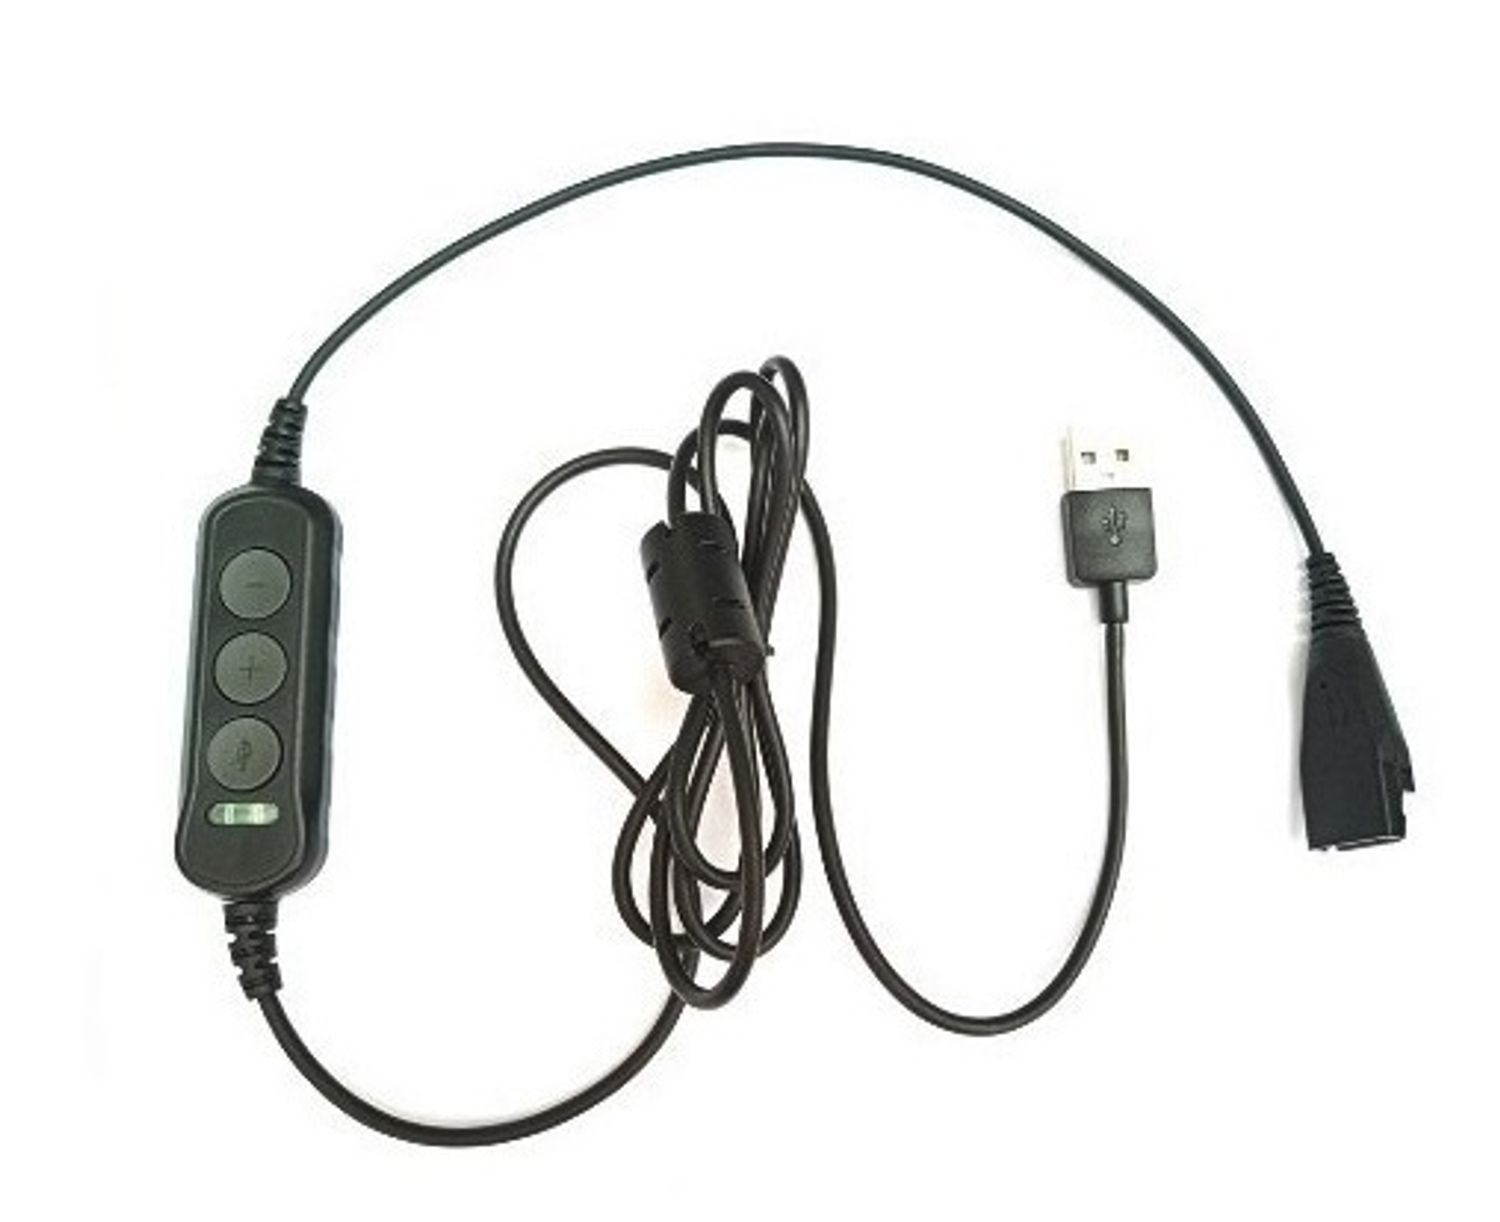 GEQUDIO Zubehör mit Schwarz USB Kabel Mac kompatibel Headset für PC und